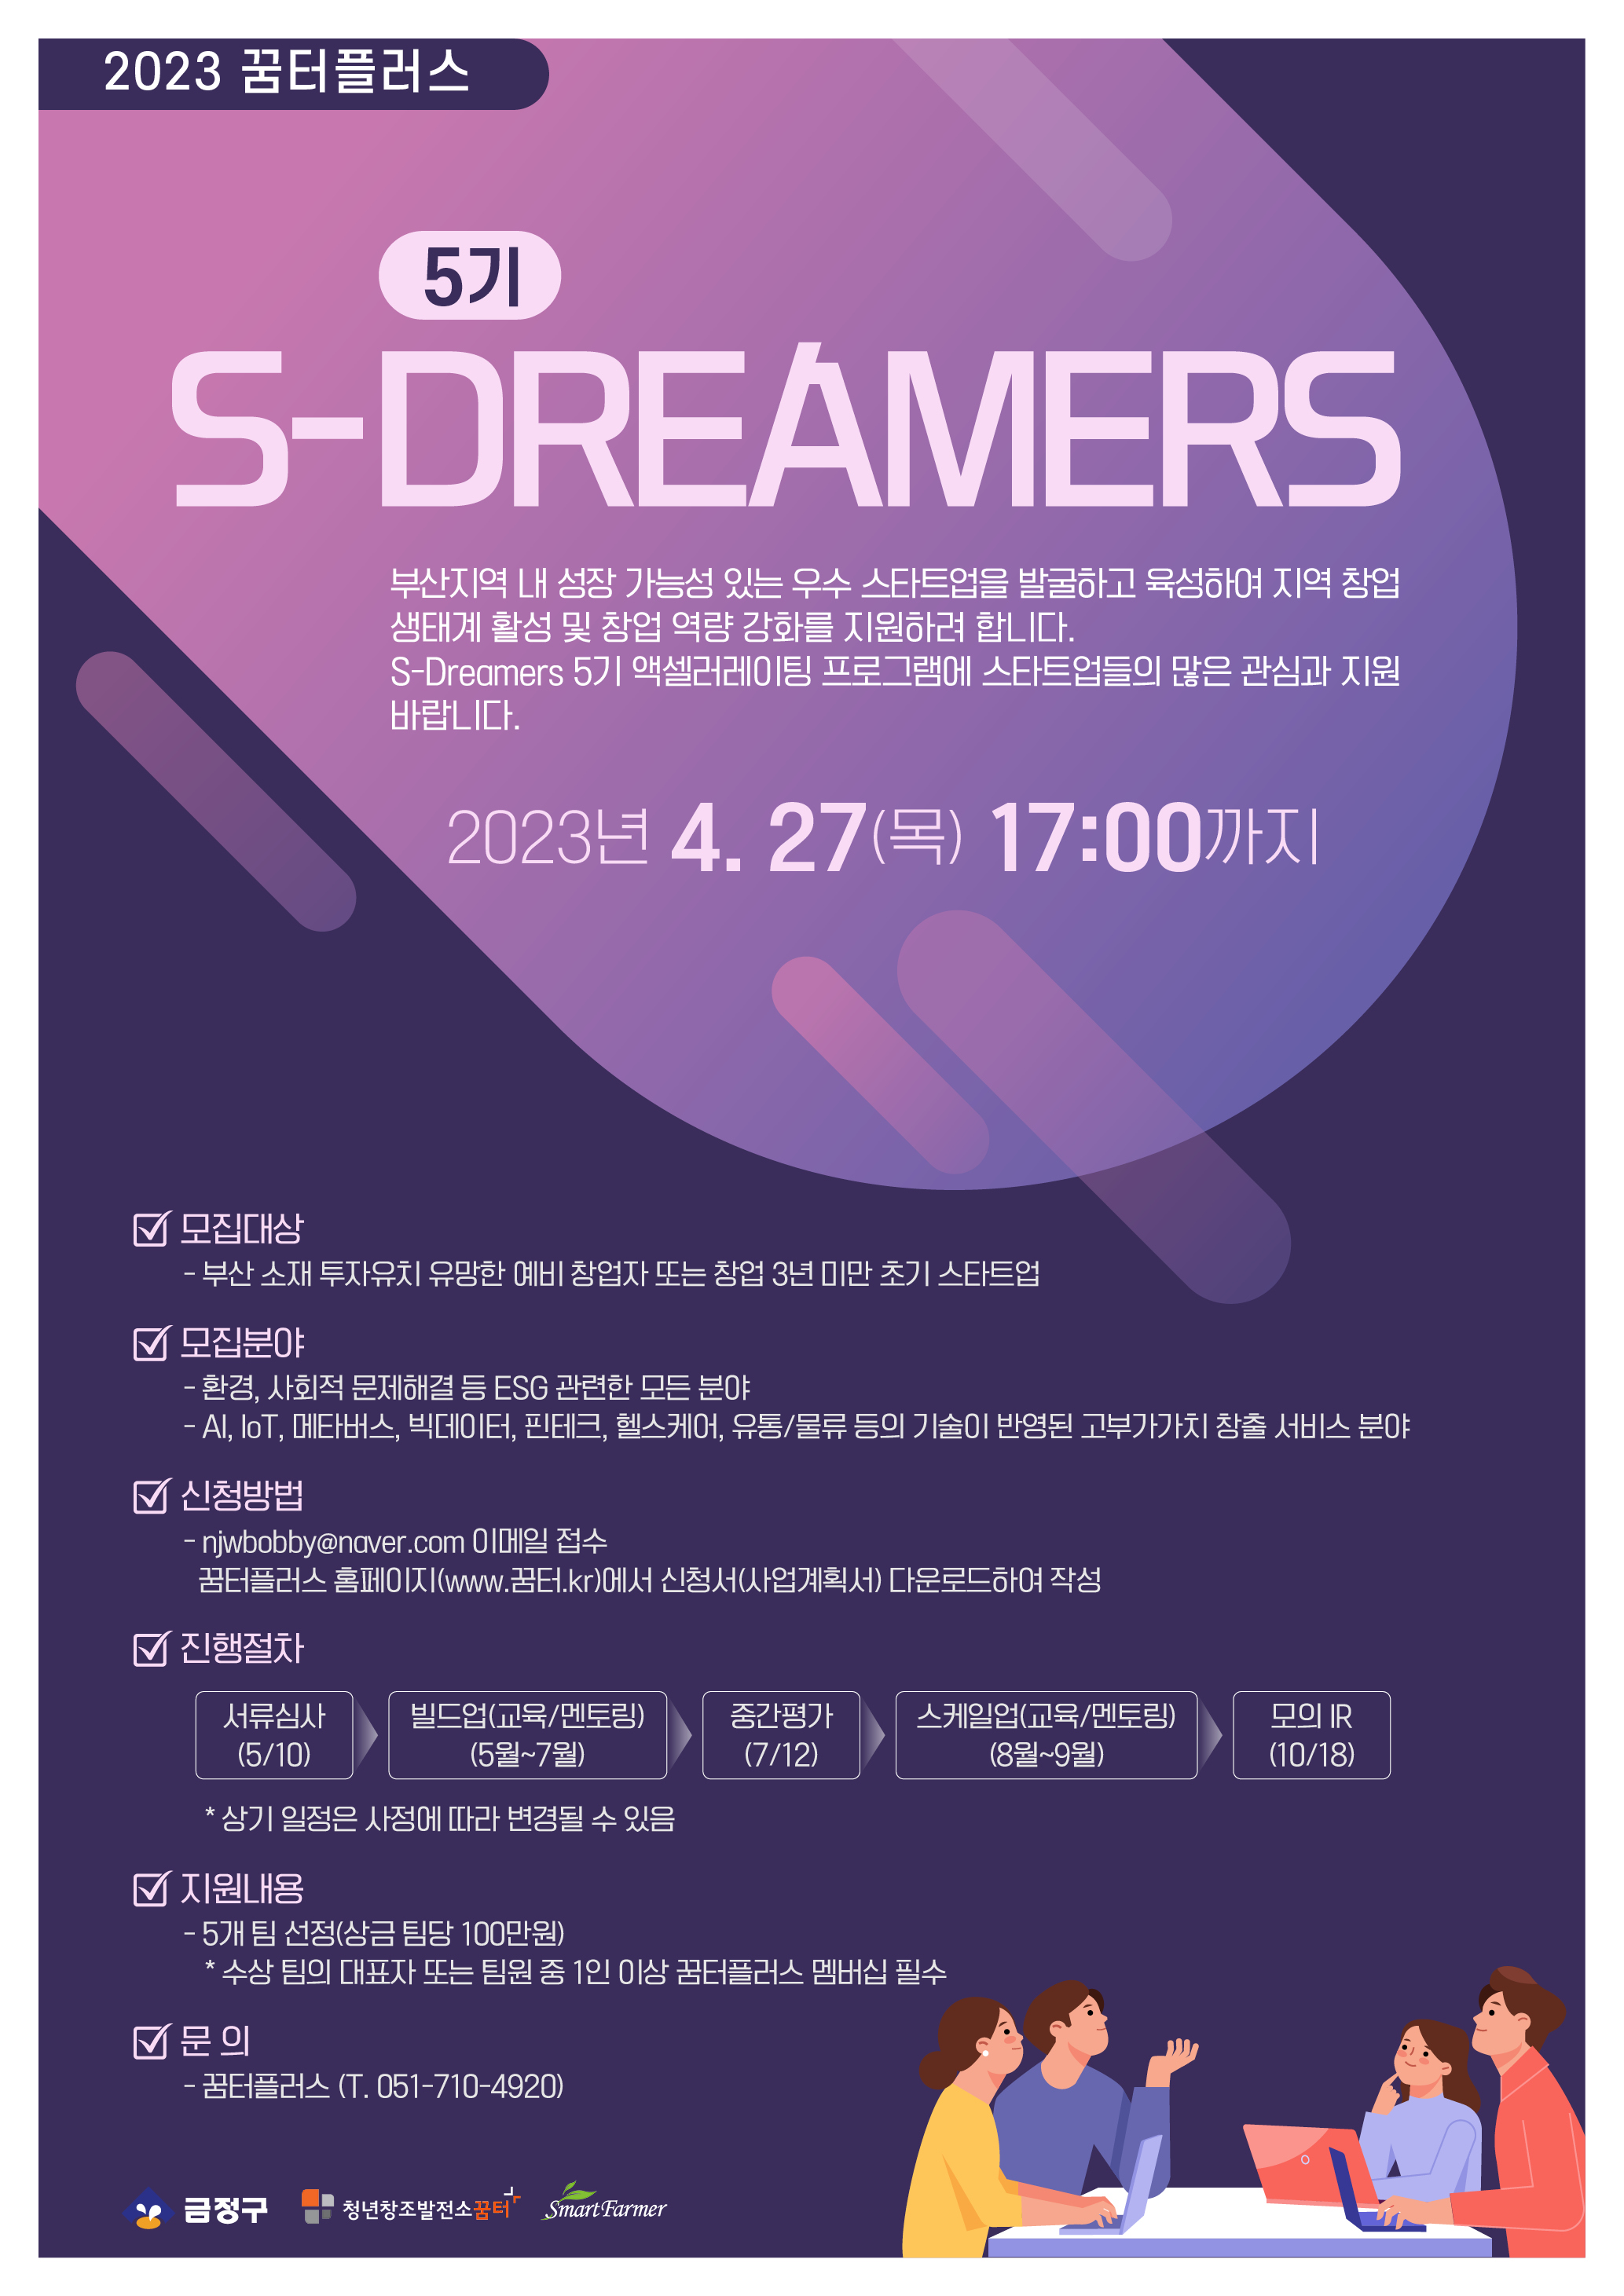 S-Dreamers 5±â_Æ÷½ºÅÍ.jpg